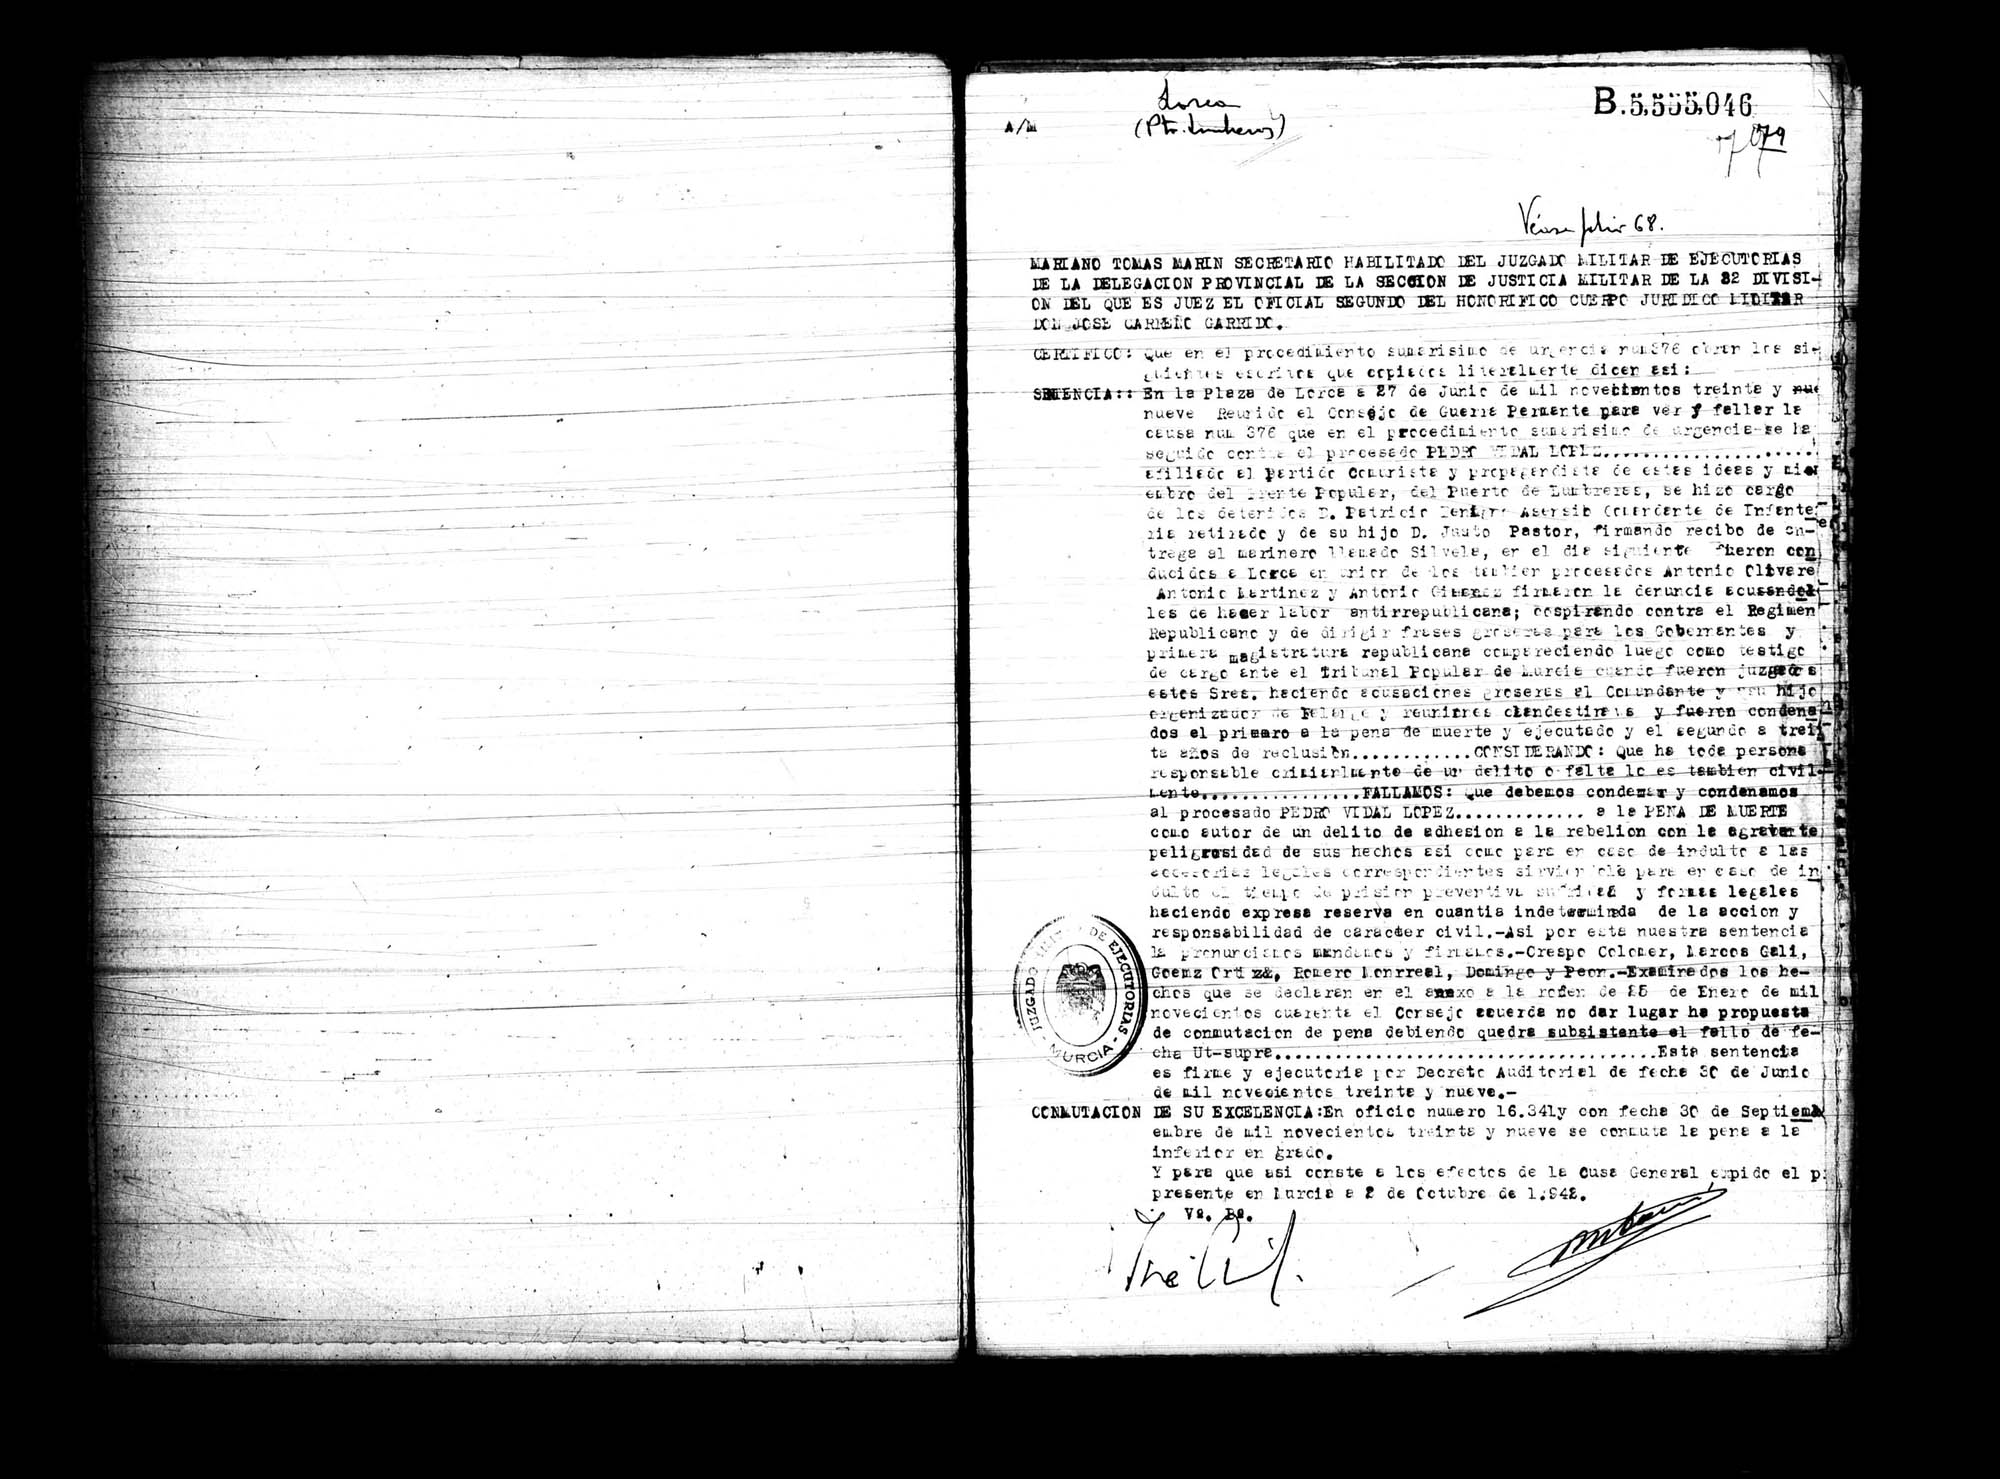 Certificado de la sentencia pronunciada contra Pedro Vidal López, causa 376, el 27 de junio de 1939 en Lorca.